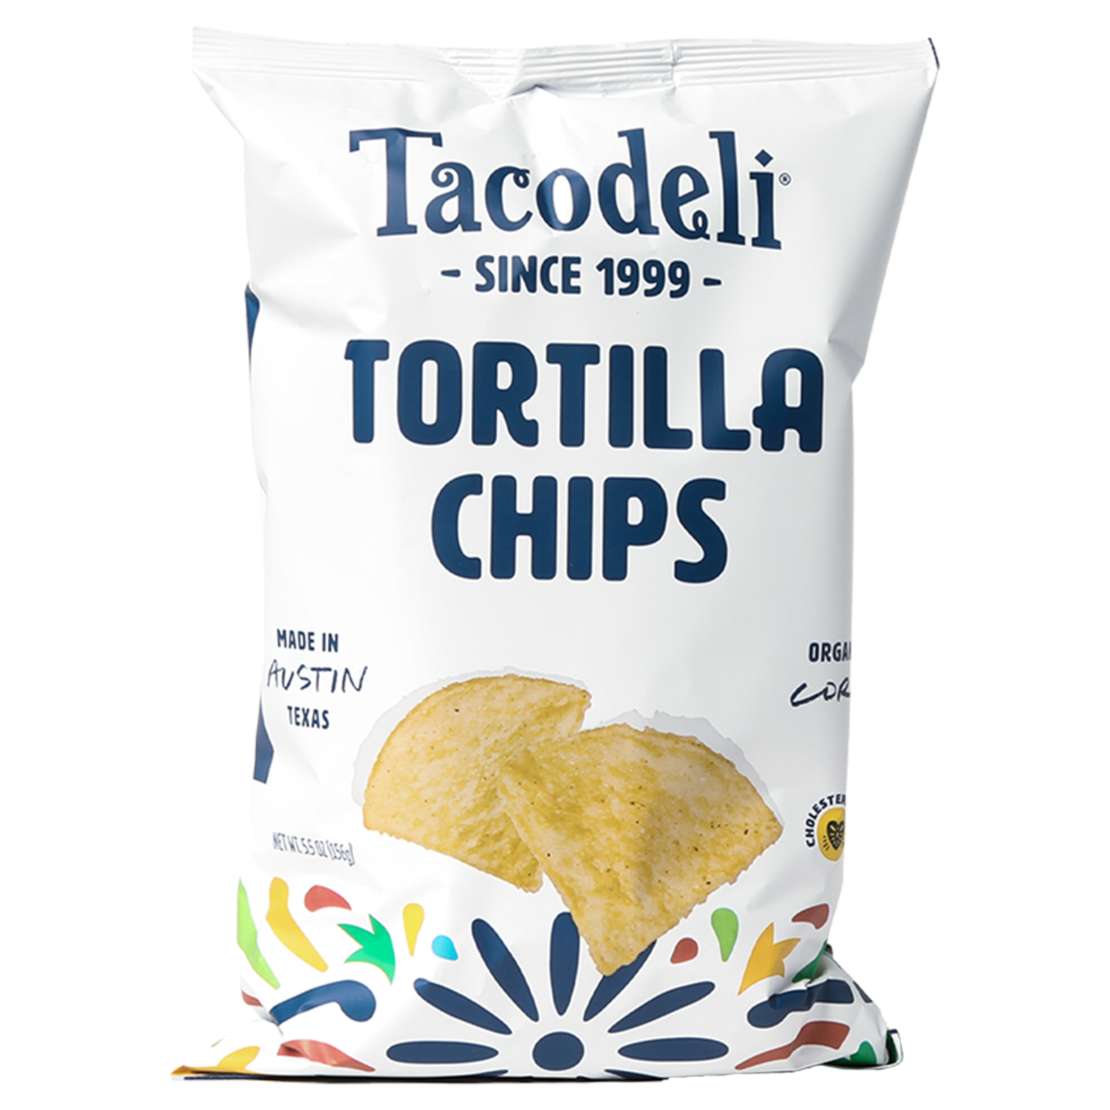 Tacodeli tortilla chips